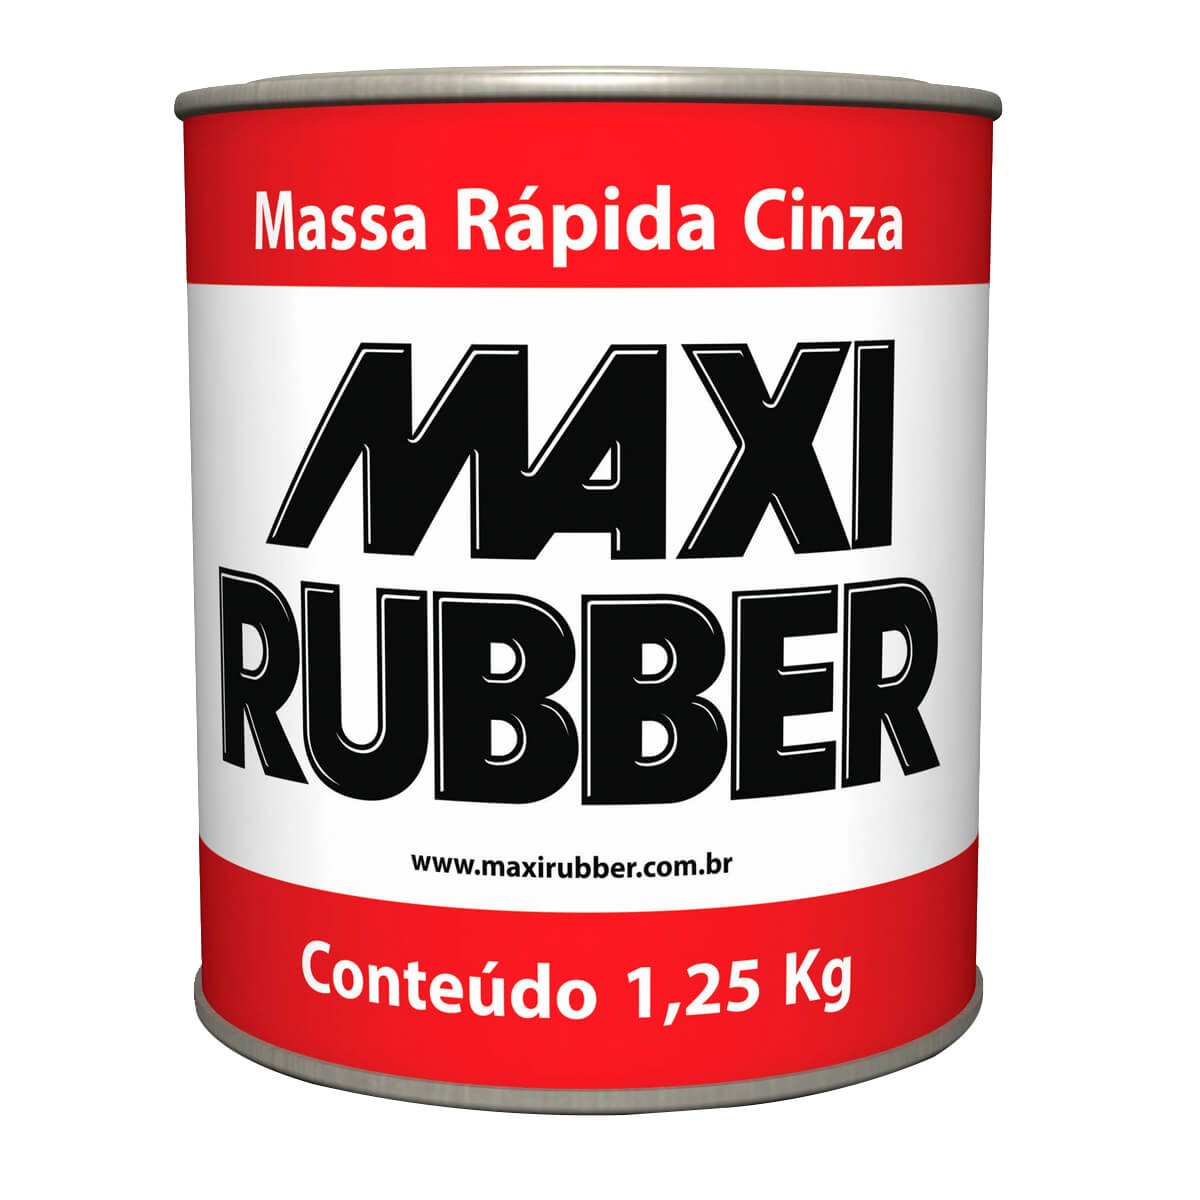 Massa Rápida Cinza 1,25Kg - Maxirubber